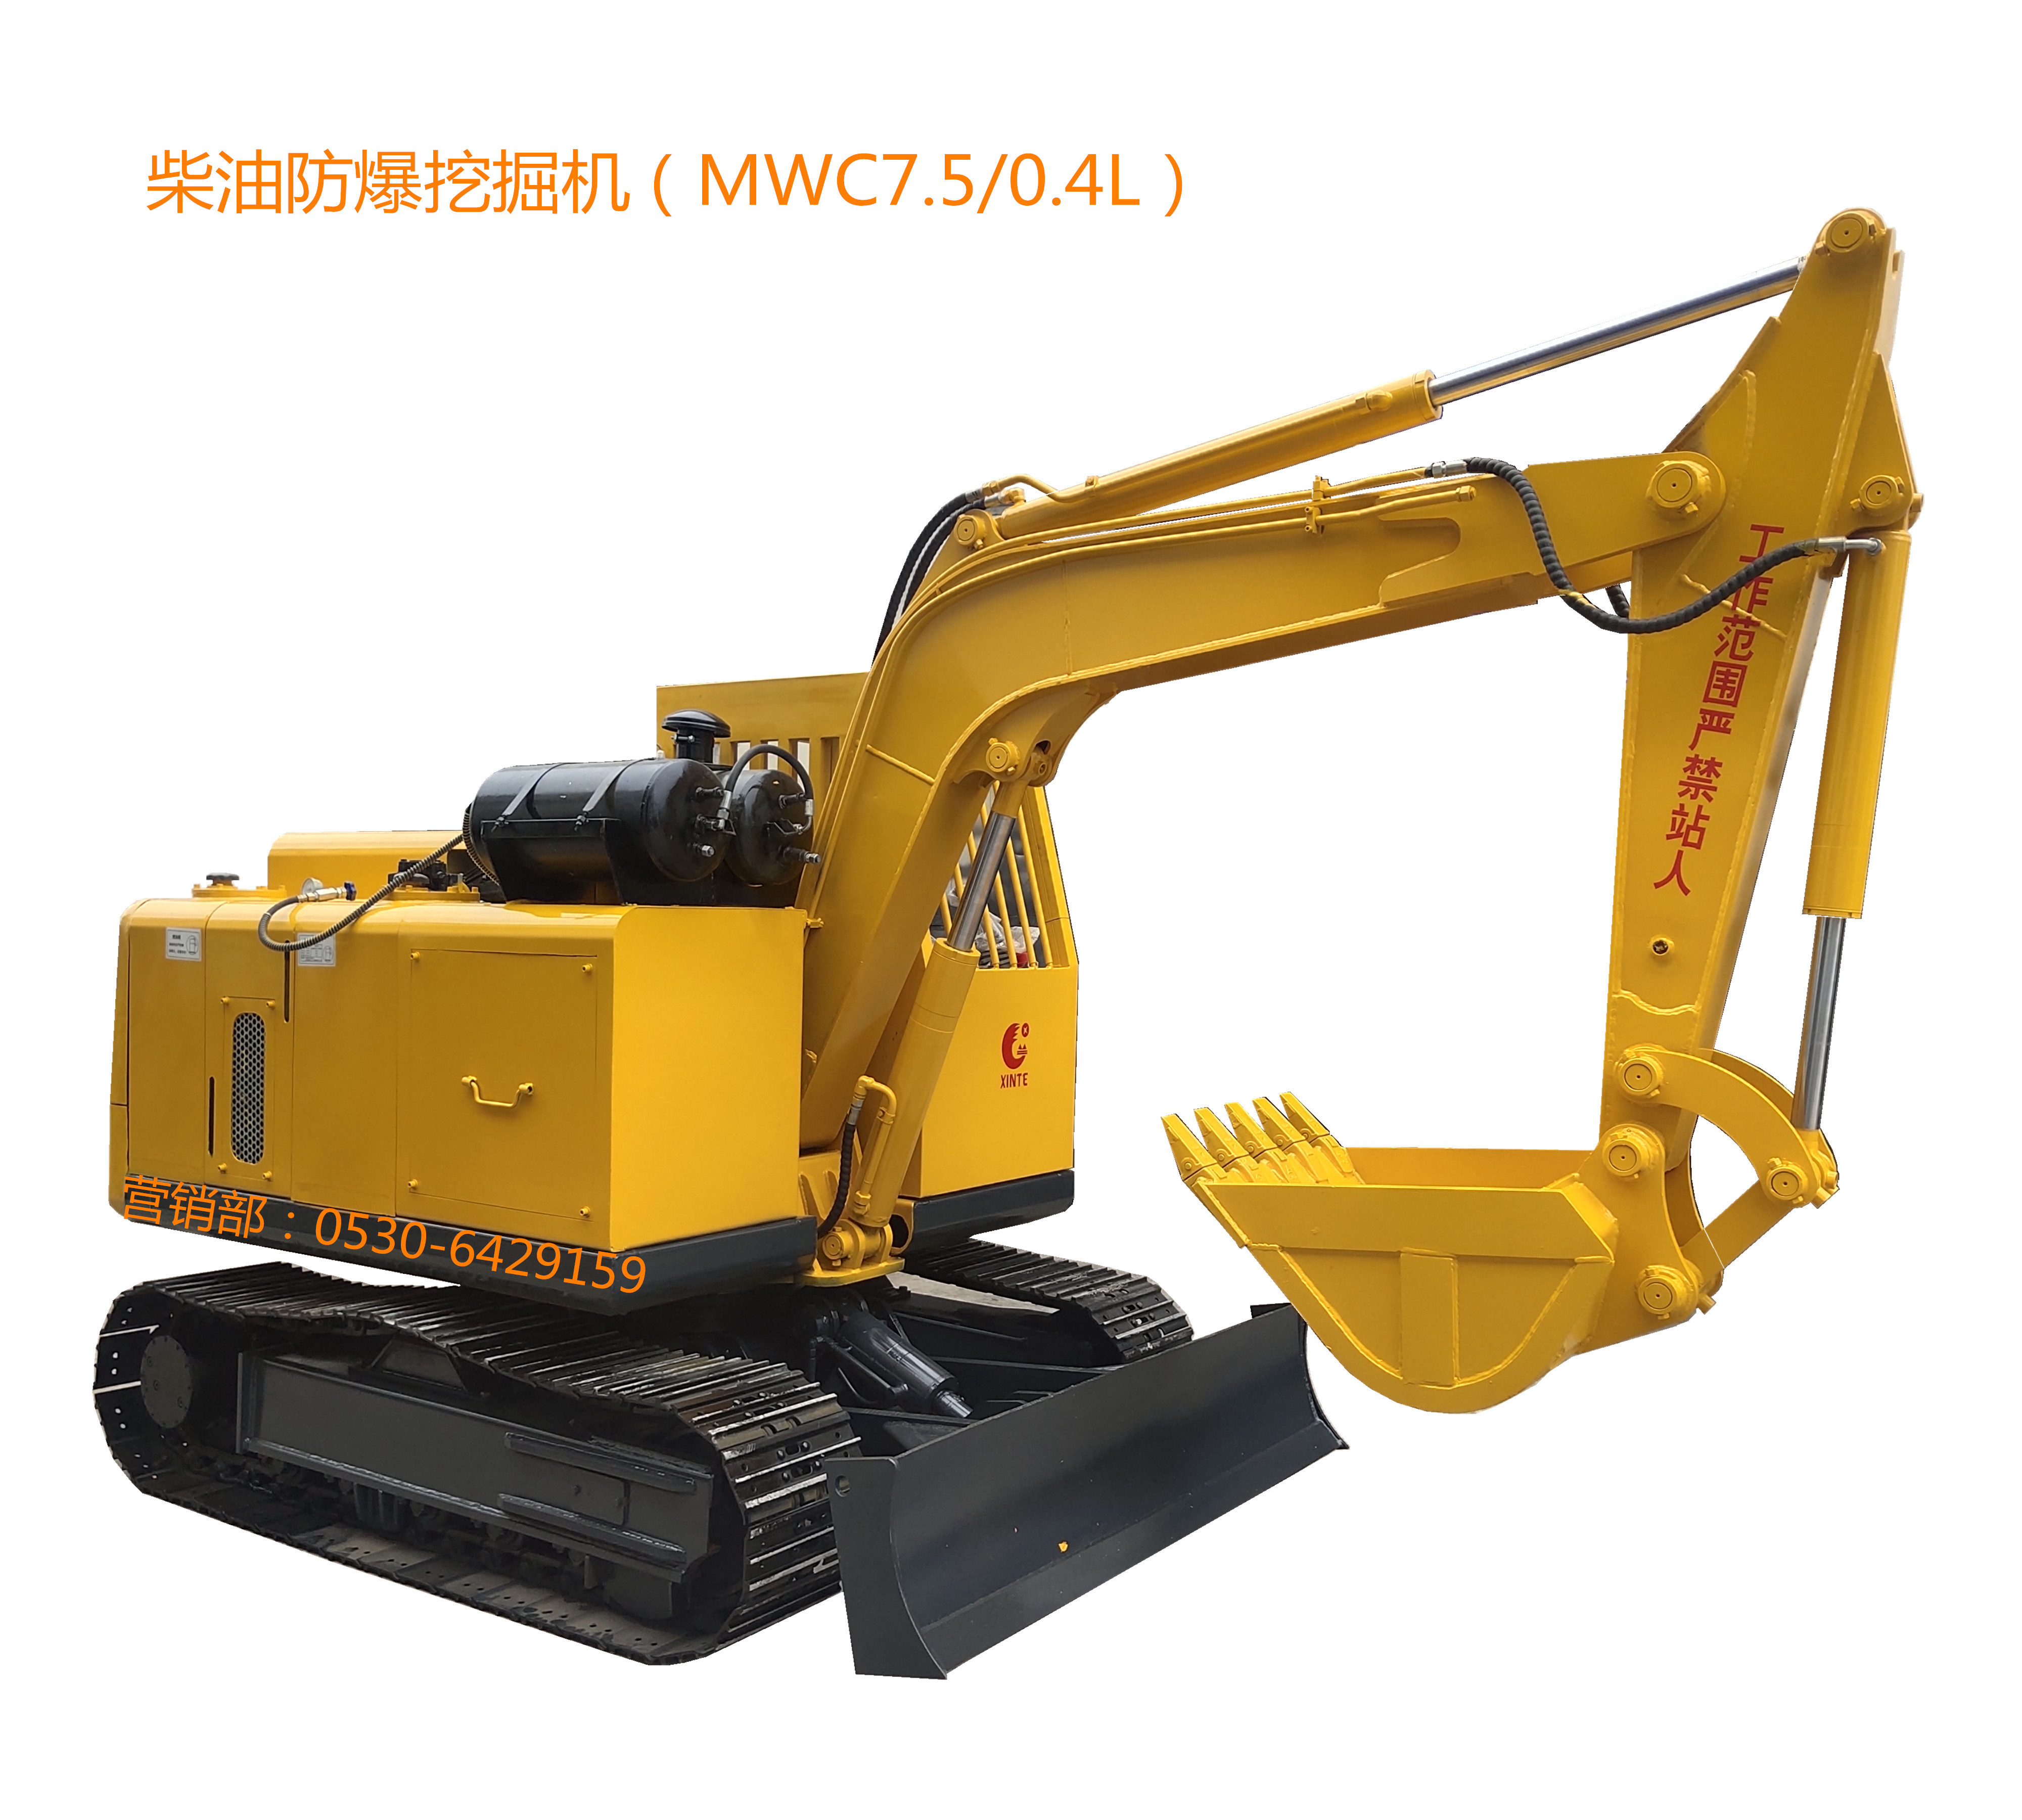 MWC6/0.3L柴油防爆挖掘机